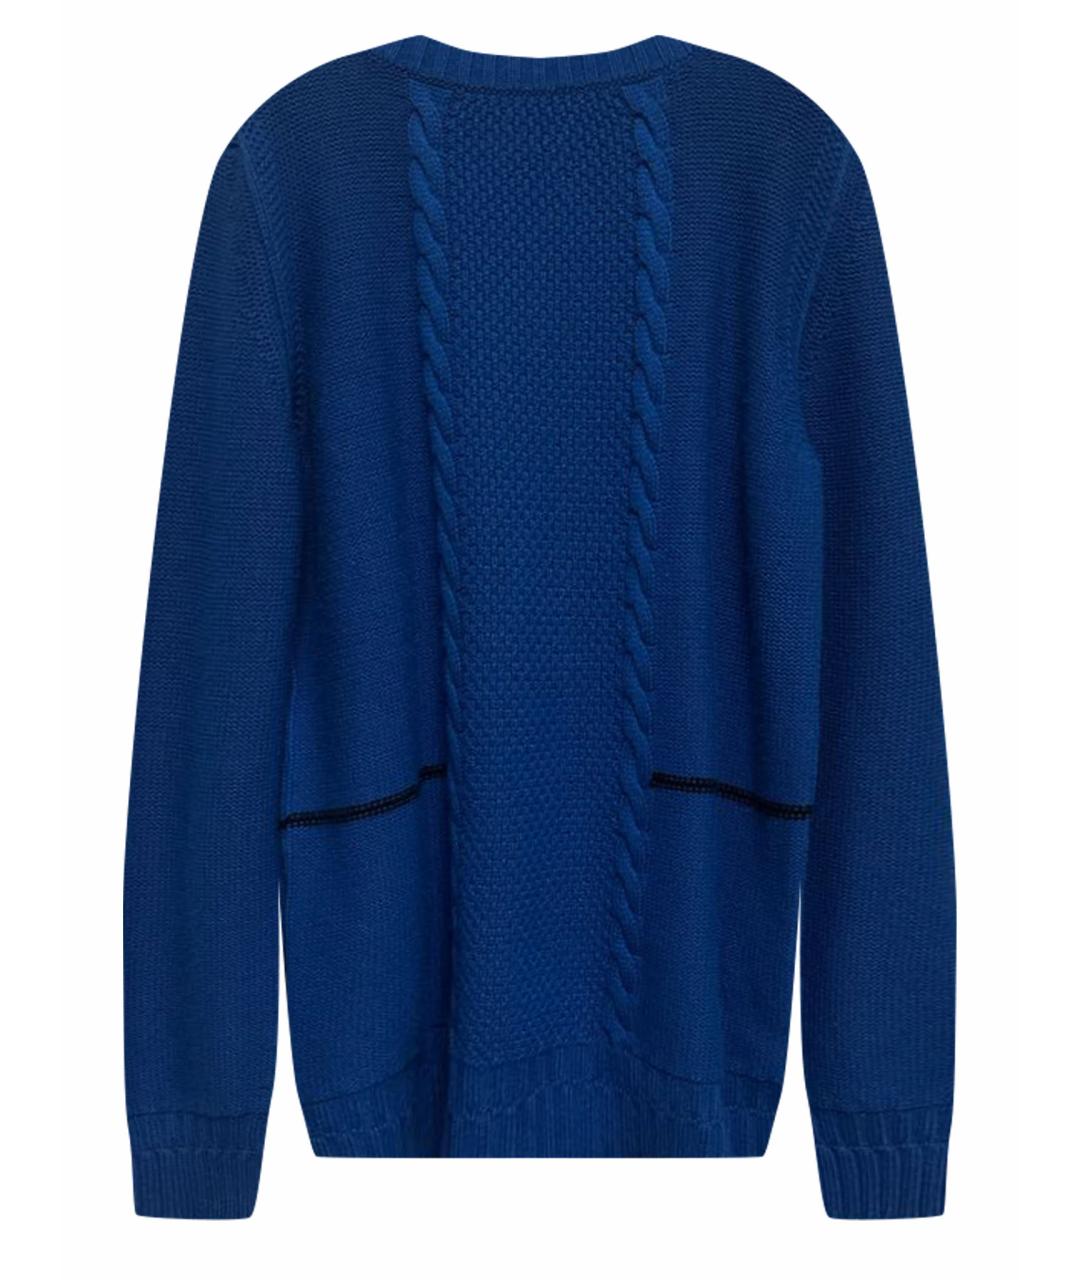 HERMES PRE-OWNED Синий кашемировый джемпер / свитер, фото 1